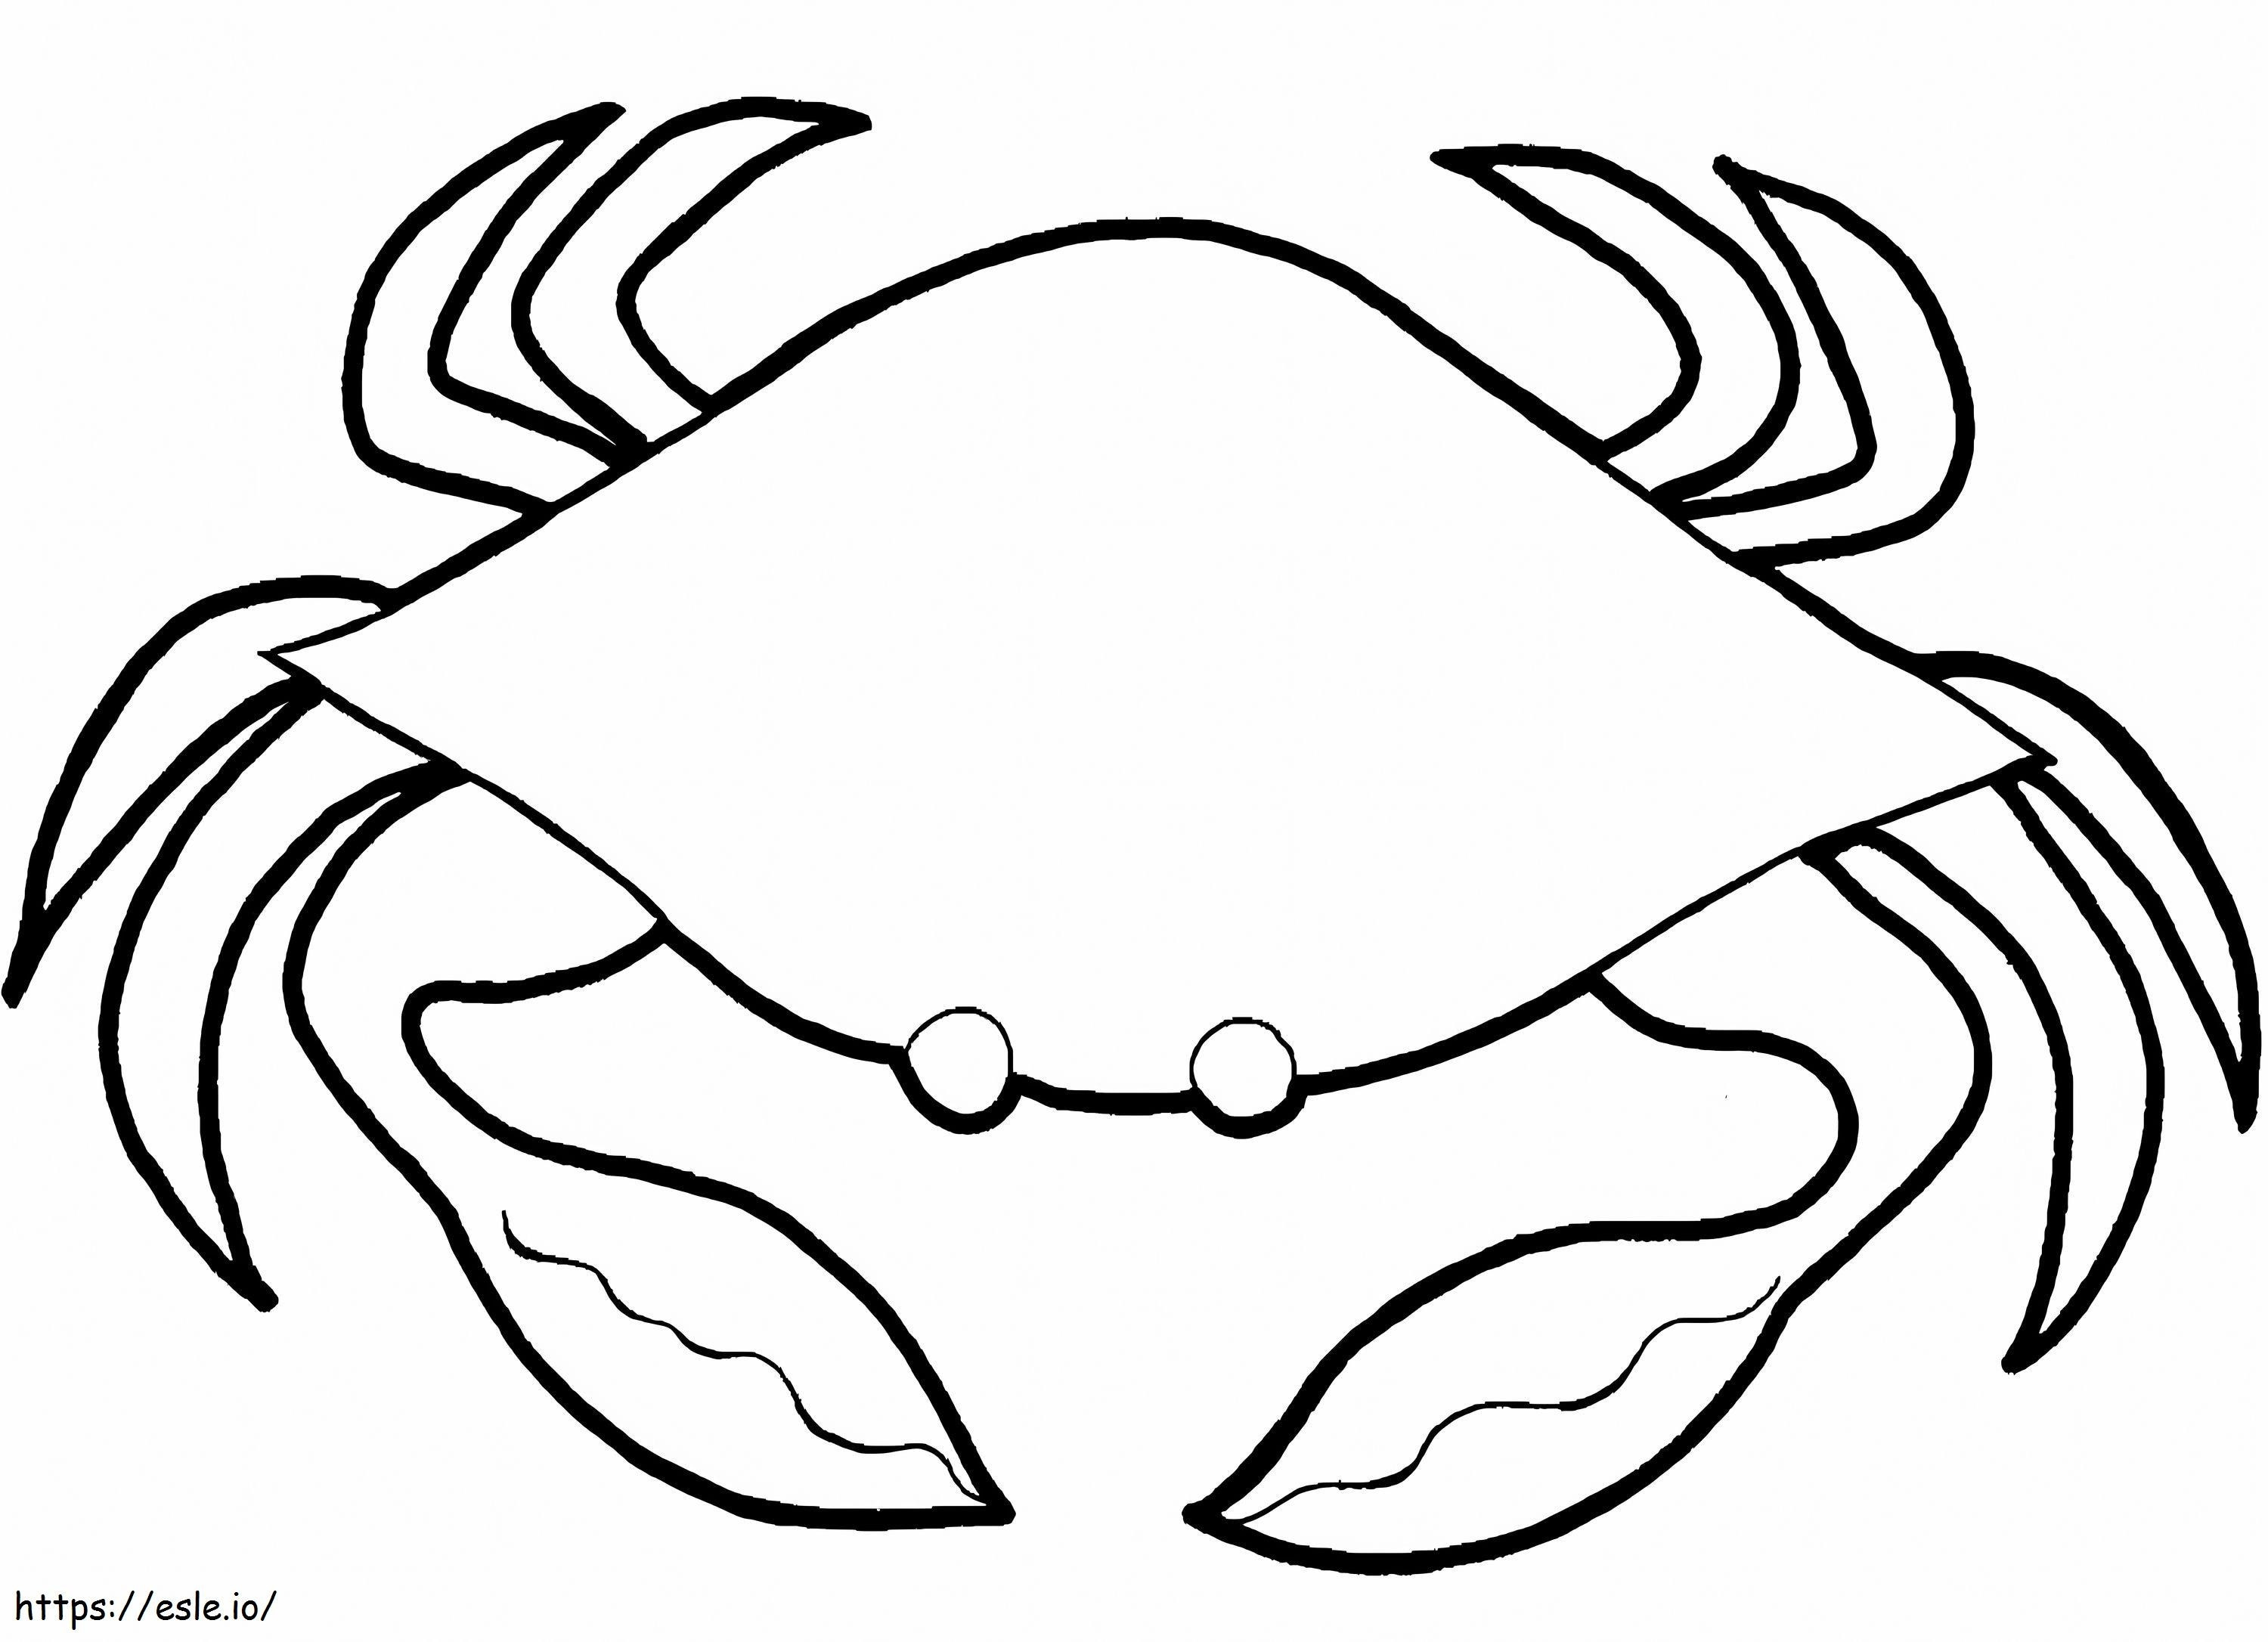 Coloriage Crabe 1 à imprimer dessin